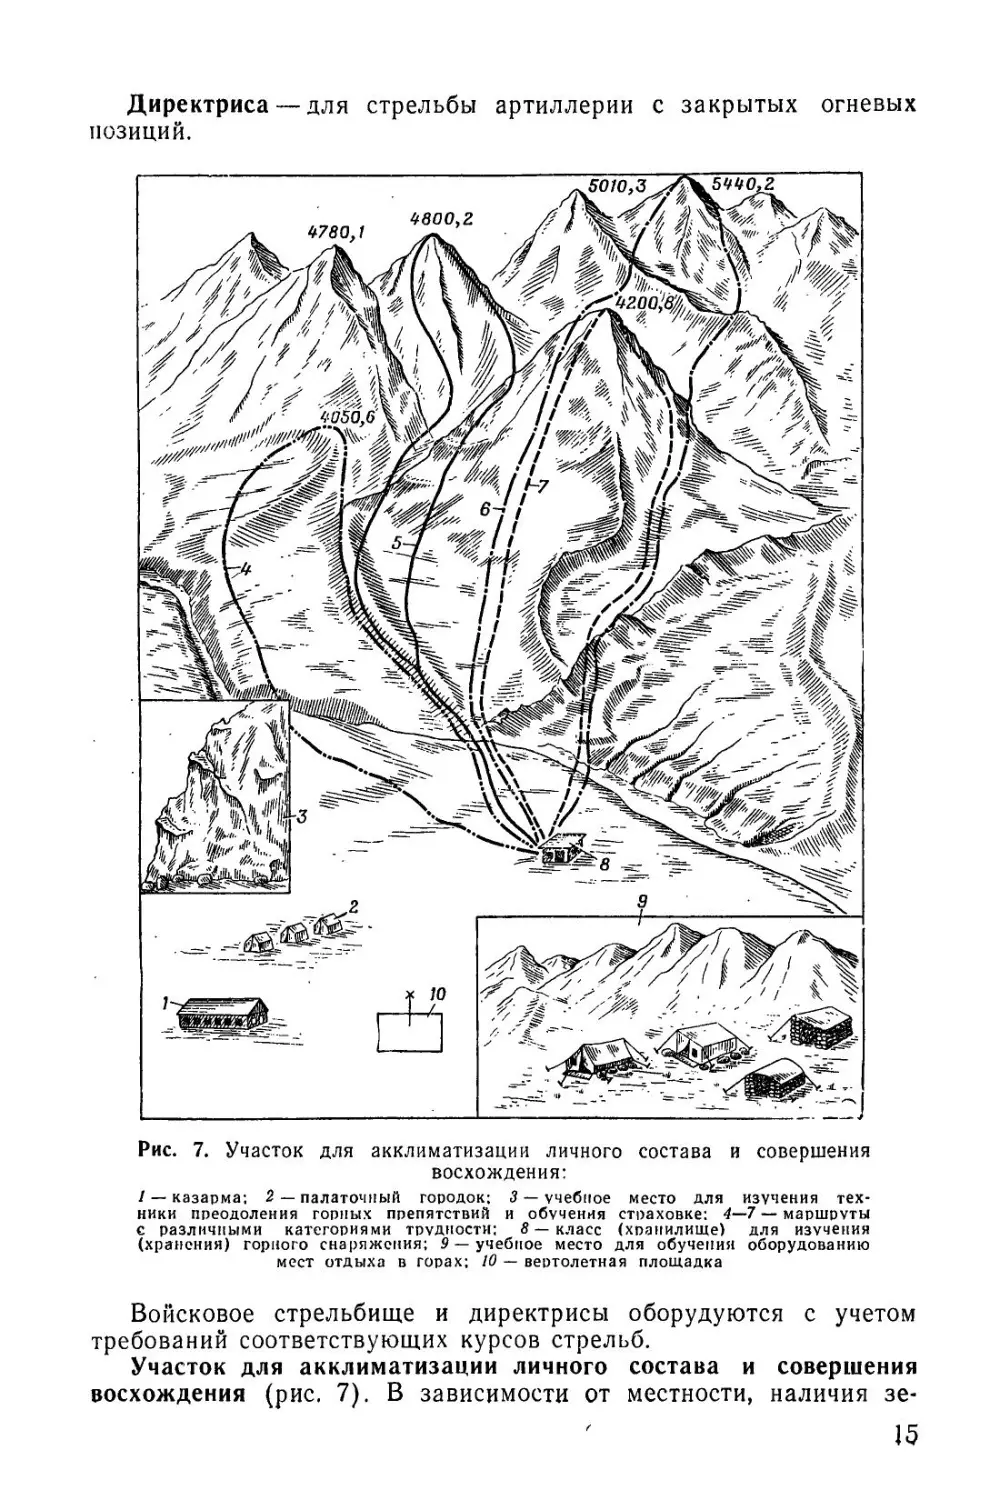 Методическое пособие Обучение мотострелковых подразделений боевым действиям в горах (1979)_16